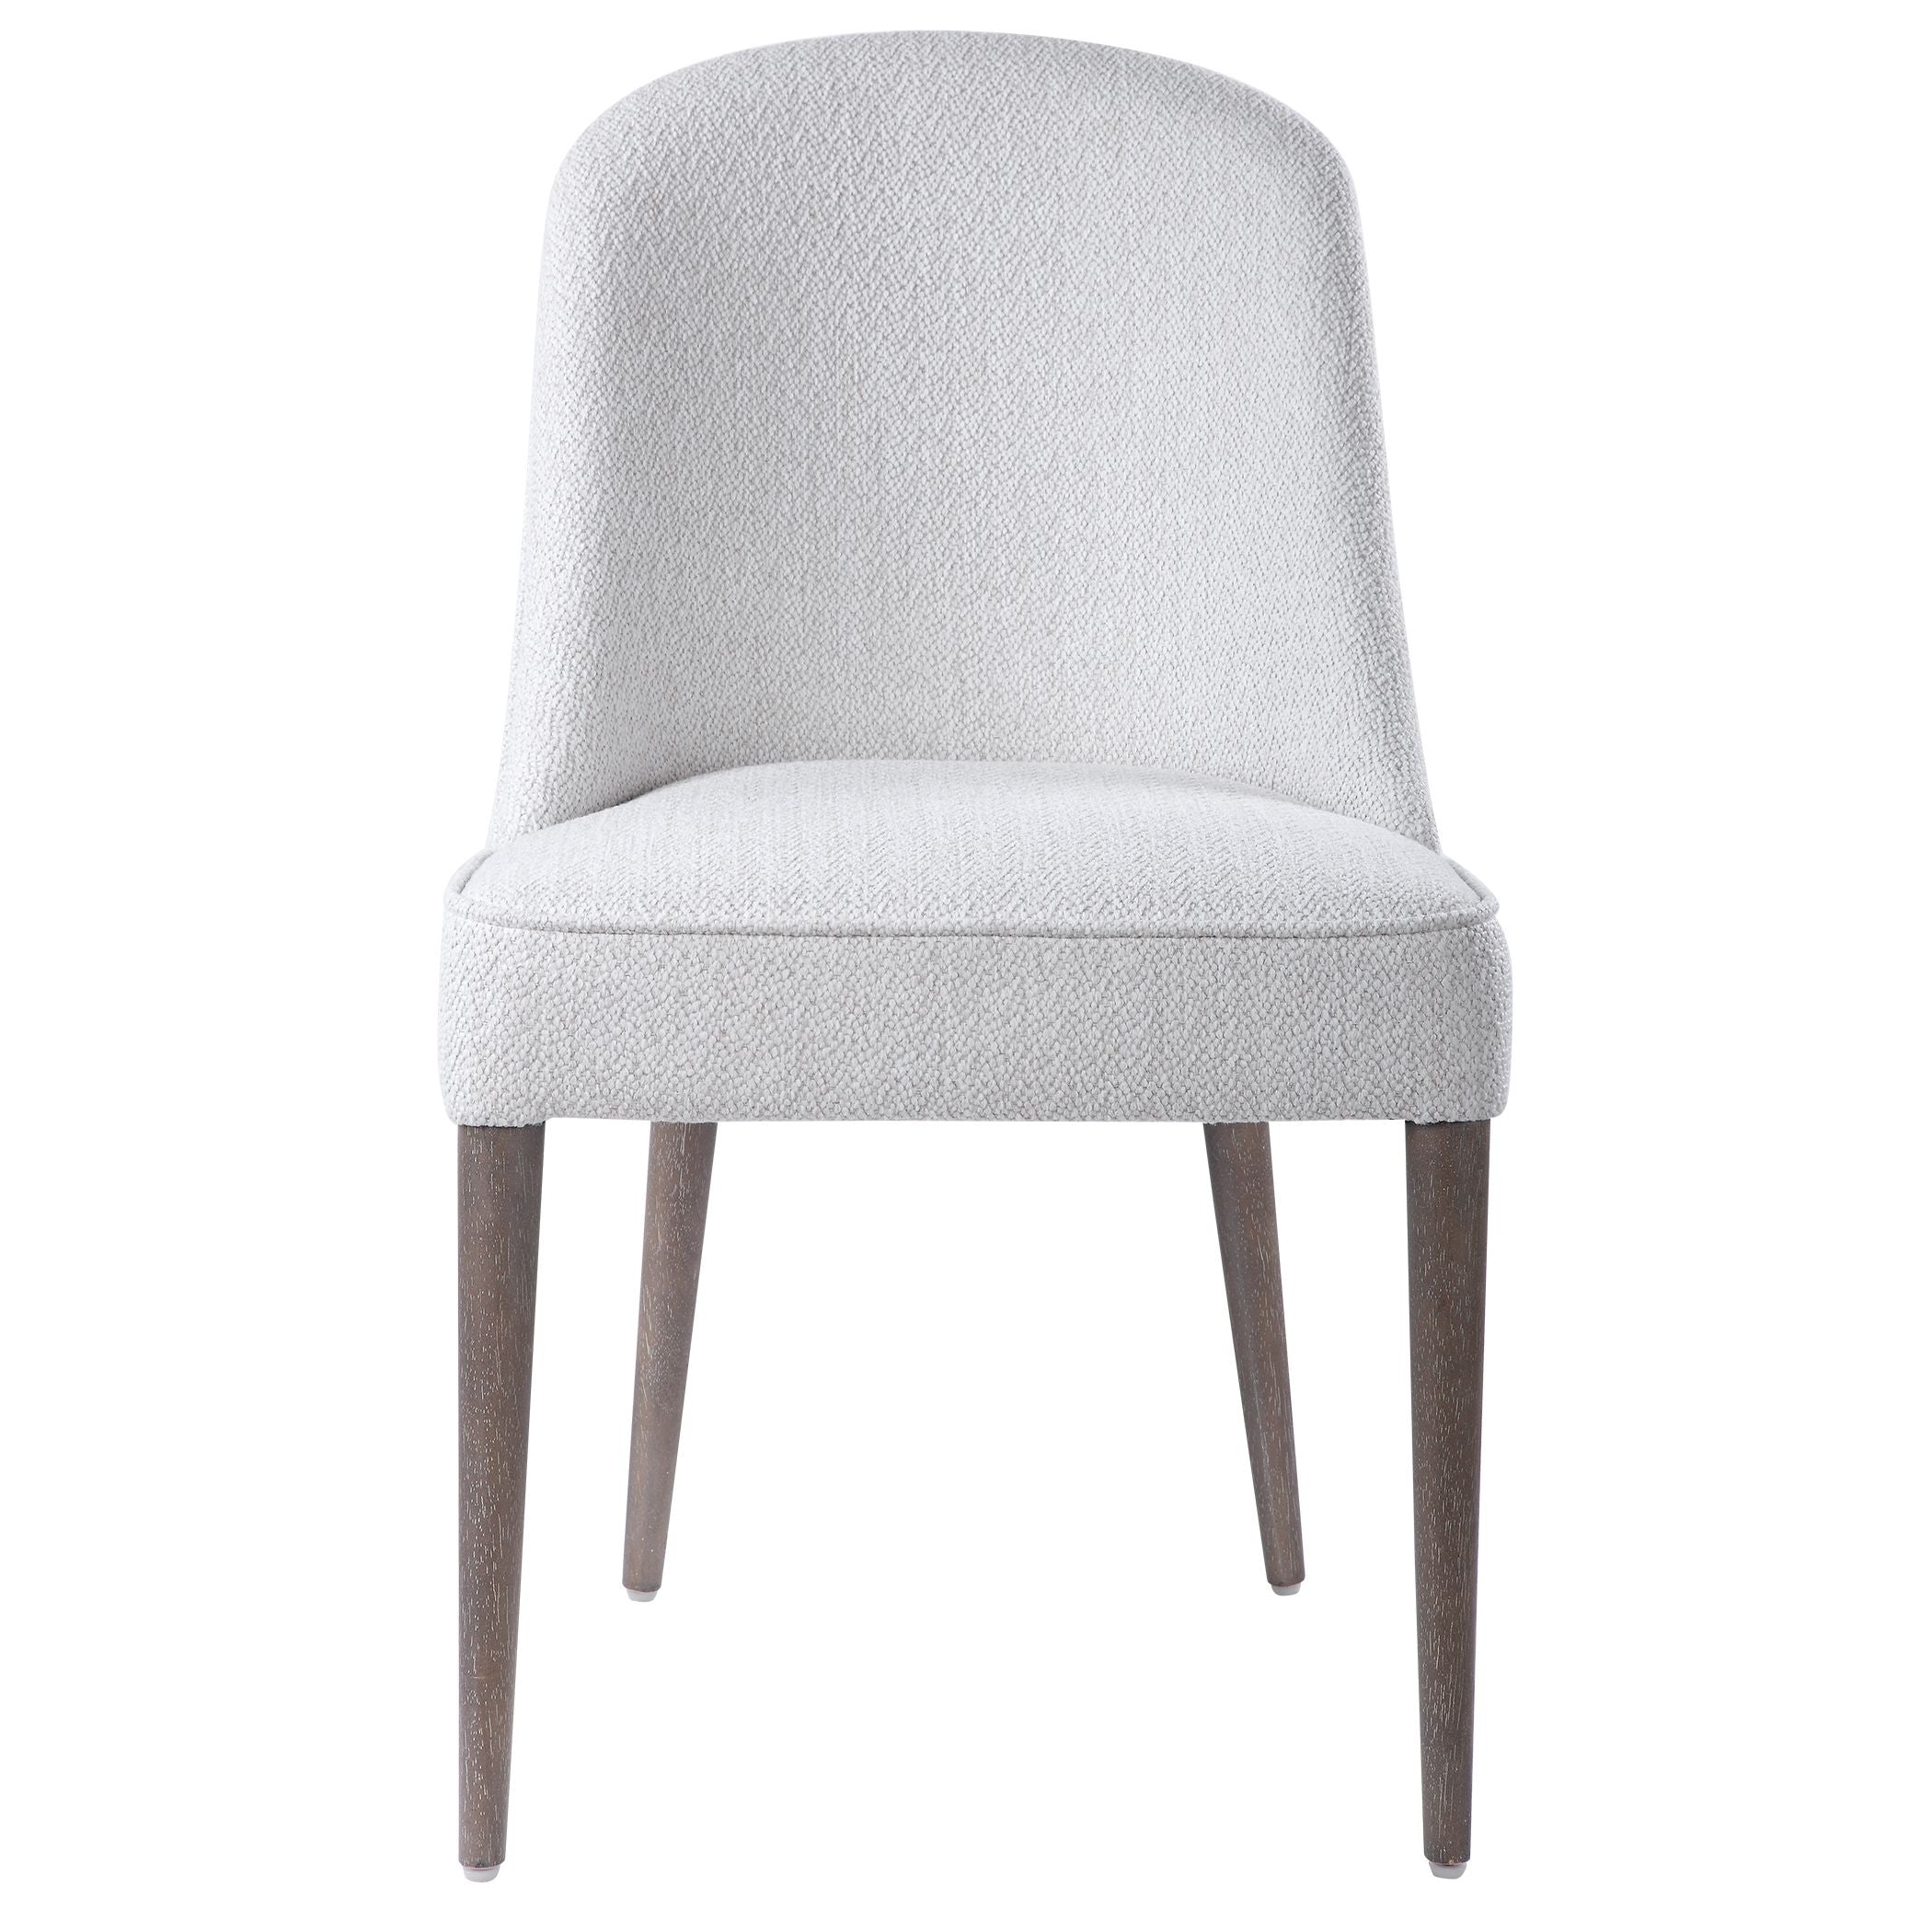 Brie Armless Chair White S/2